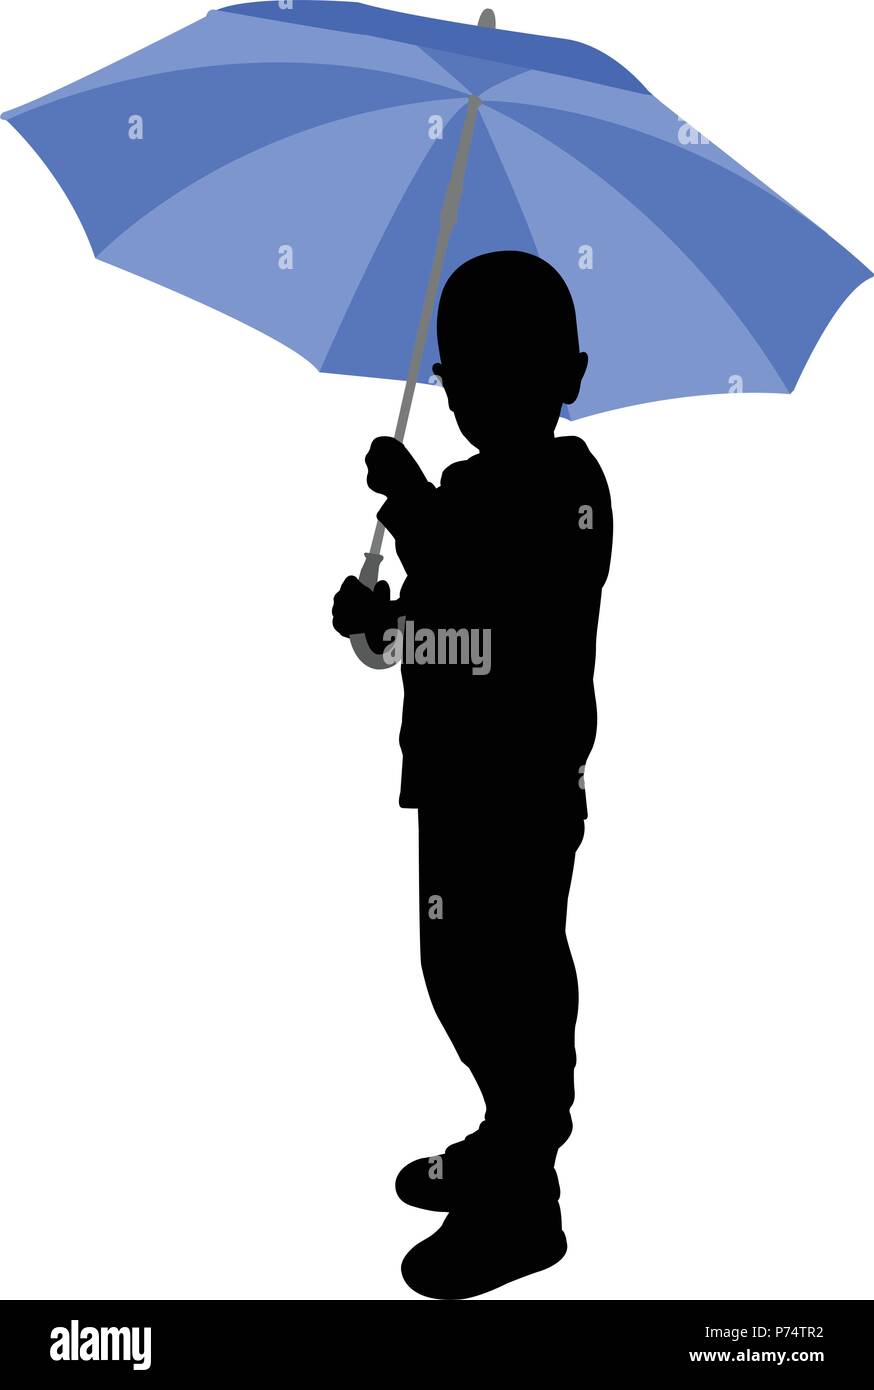 toddler holding umbrella silhouette - vector Stock Vector